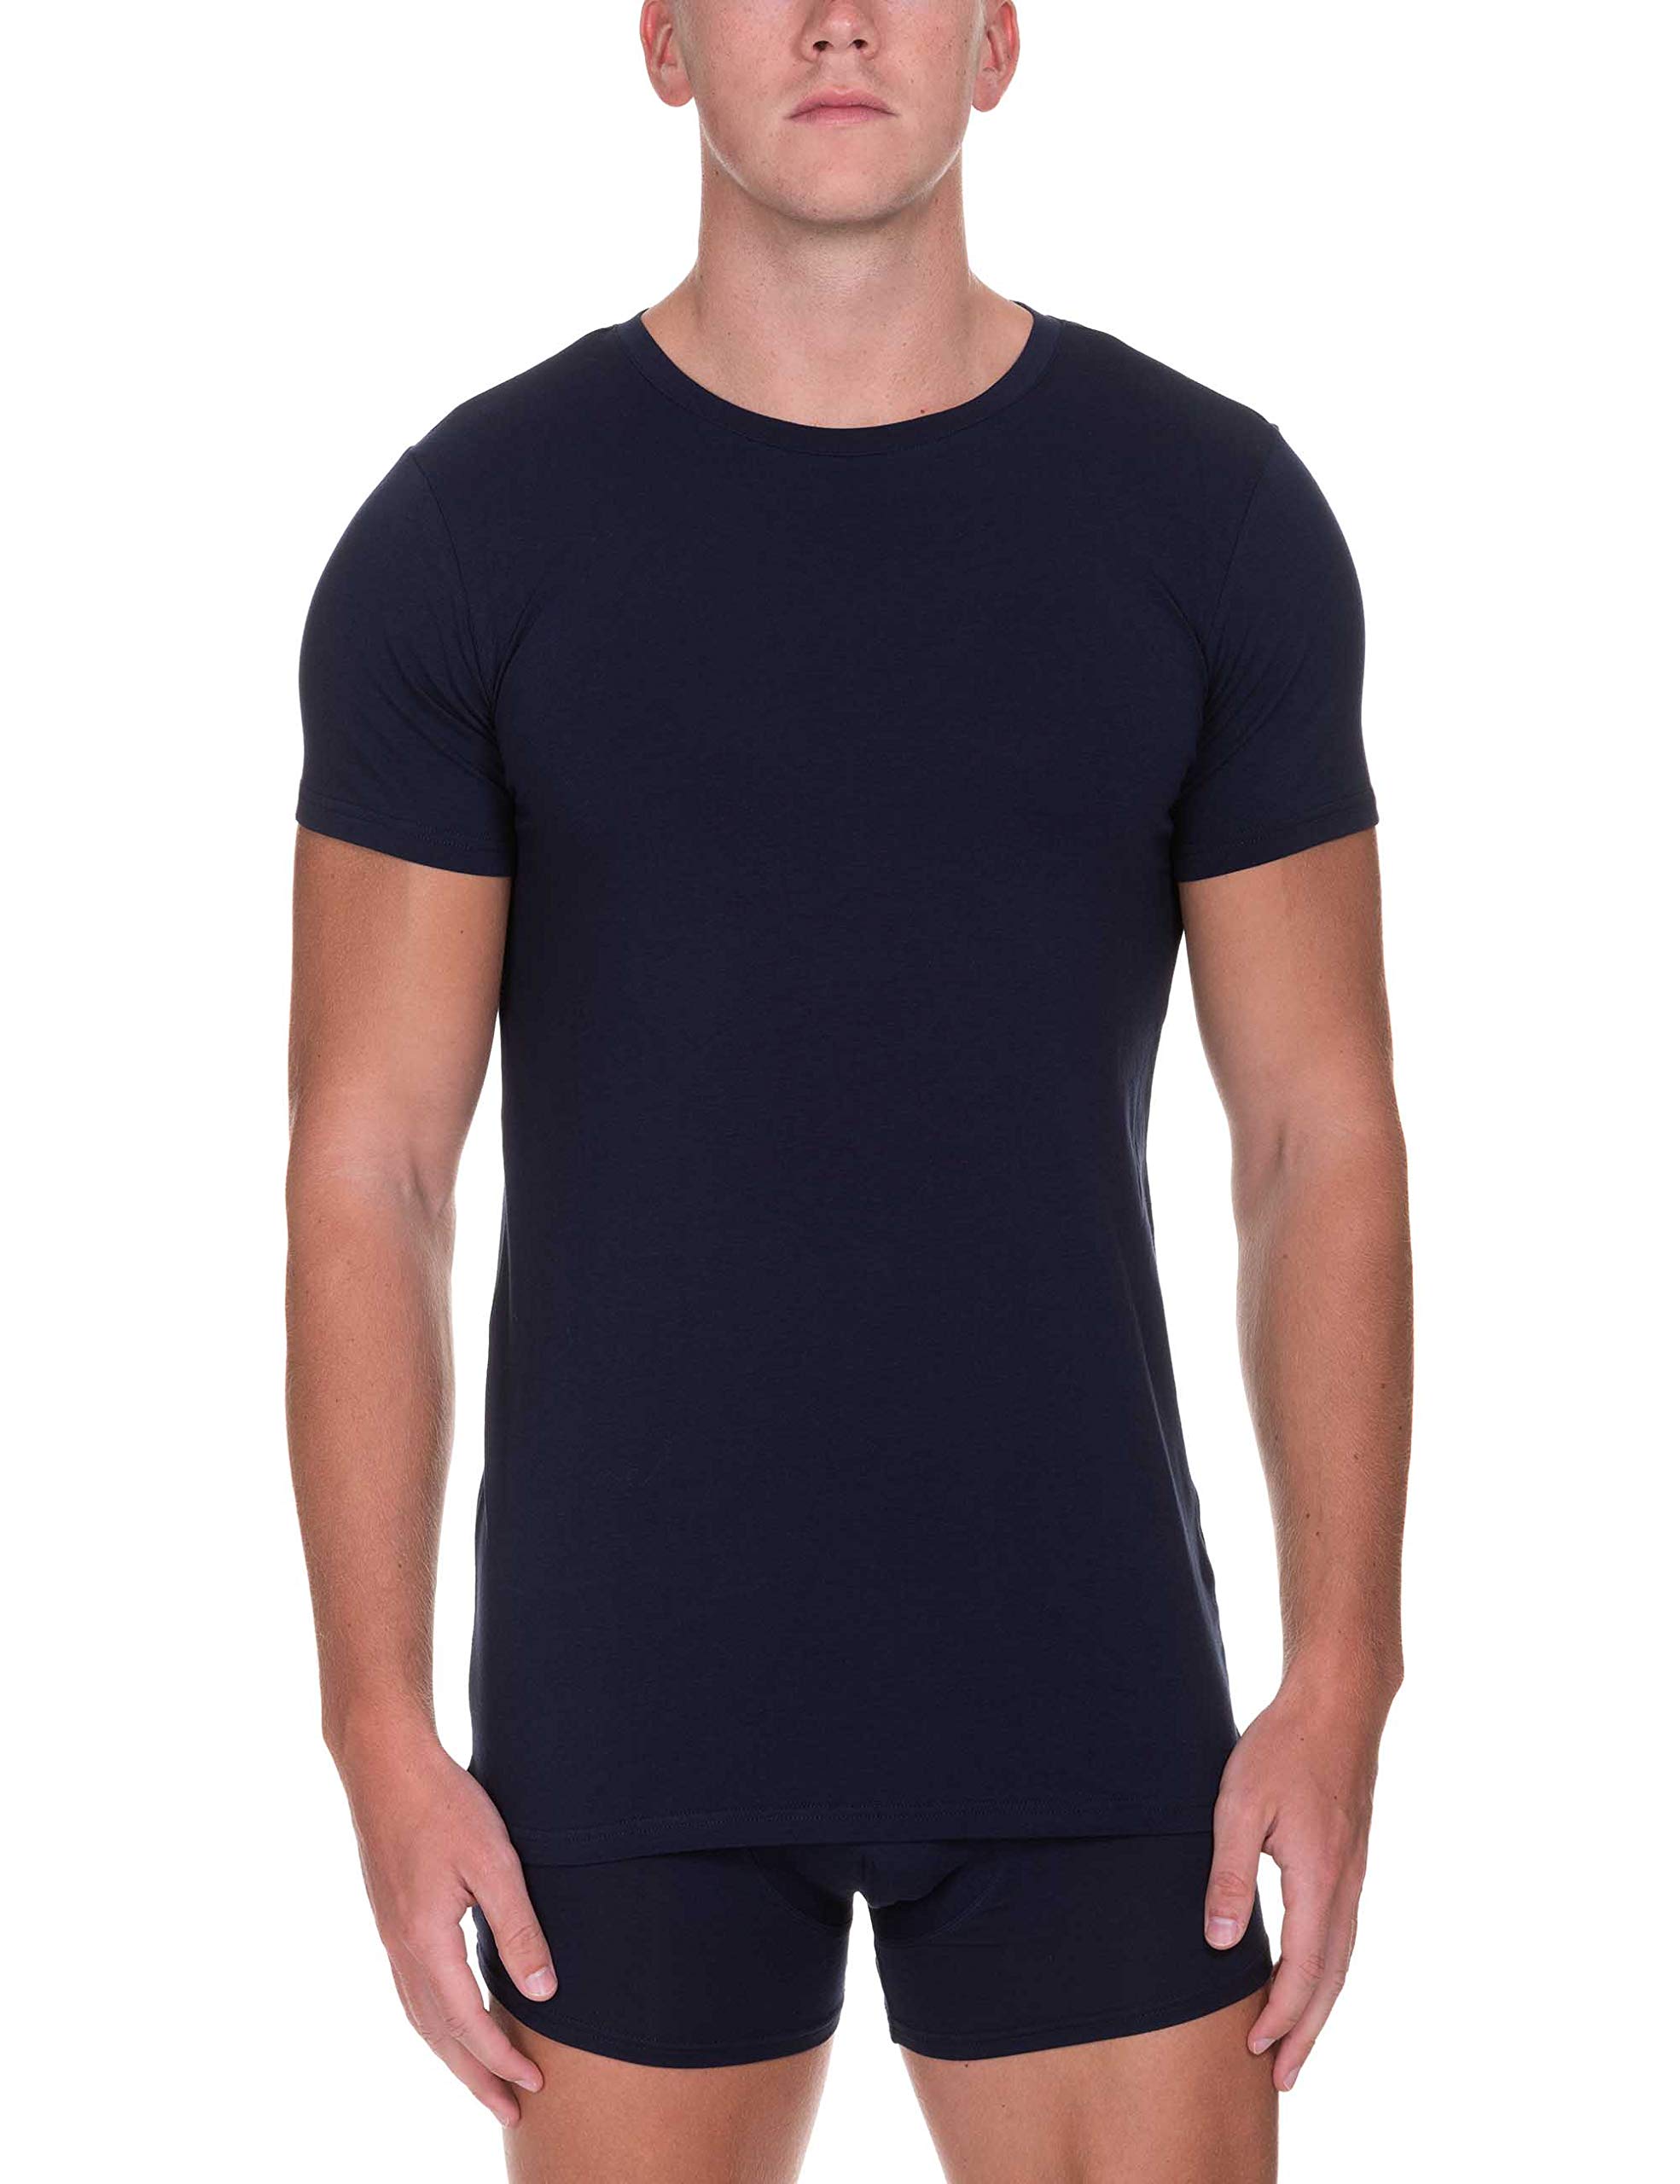 bruno banani Herren Shirt Infinity Unterhemd, Blau (Dunkelblau 090), XL EU